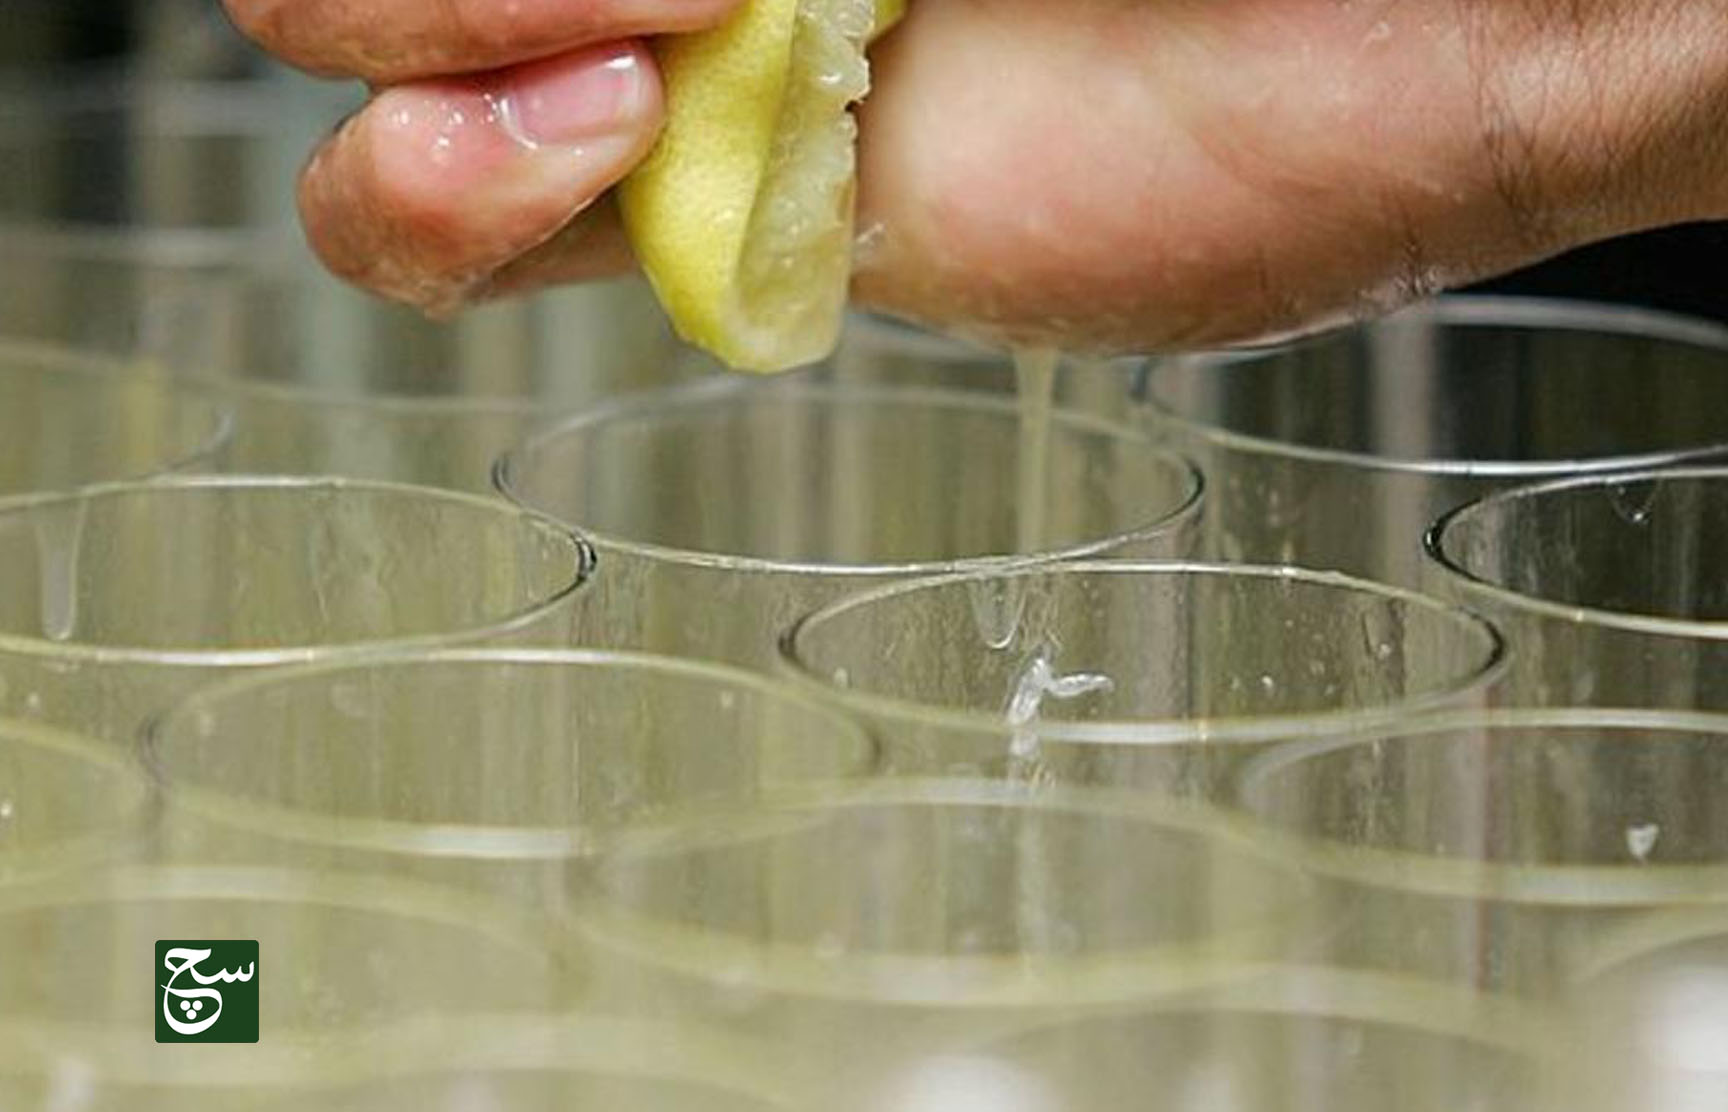 ماذا يحدث إذا شربت الماء مع قطع ليمون كل يوم؟